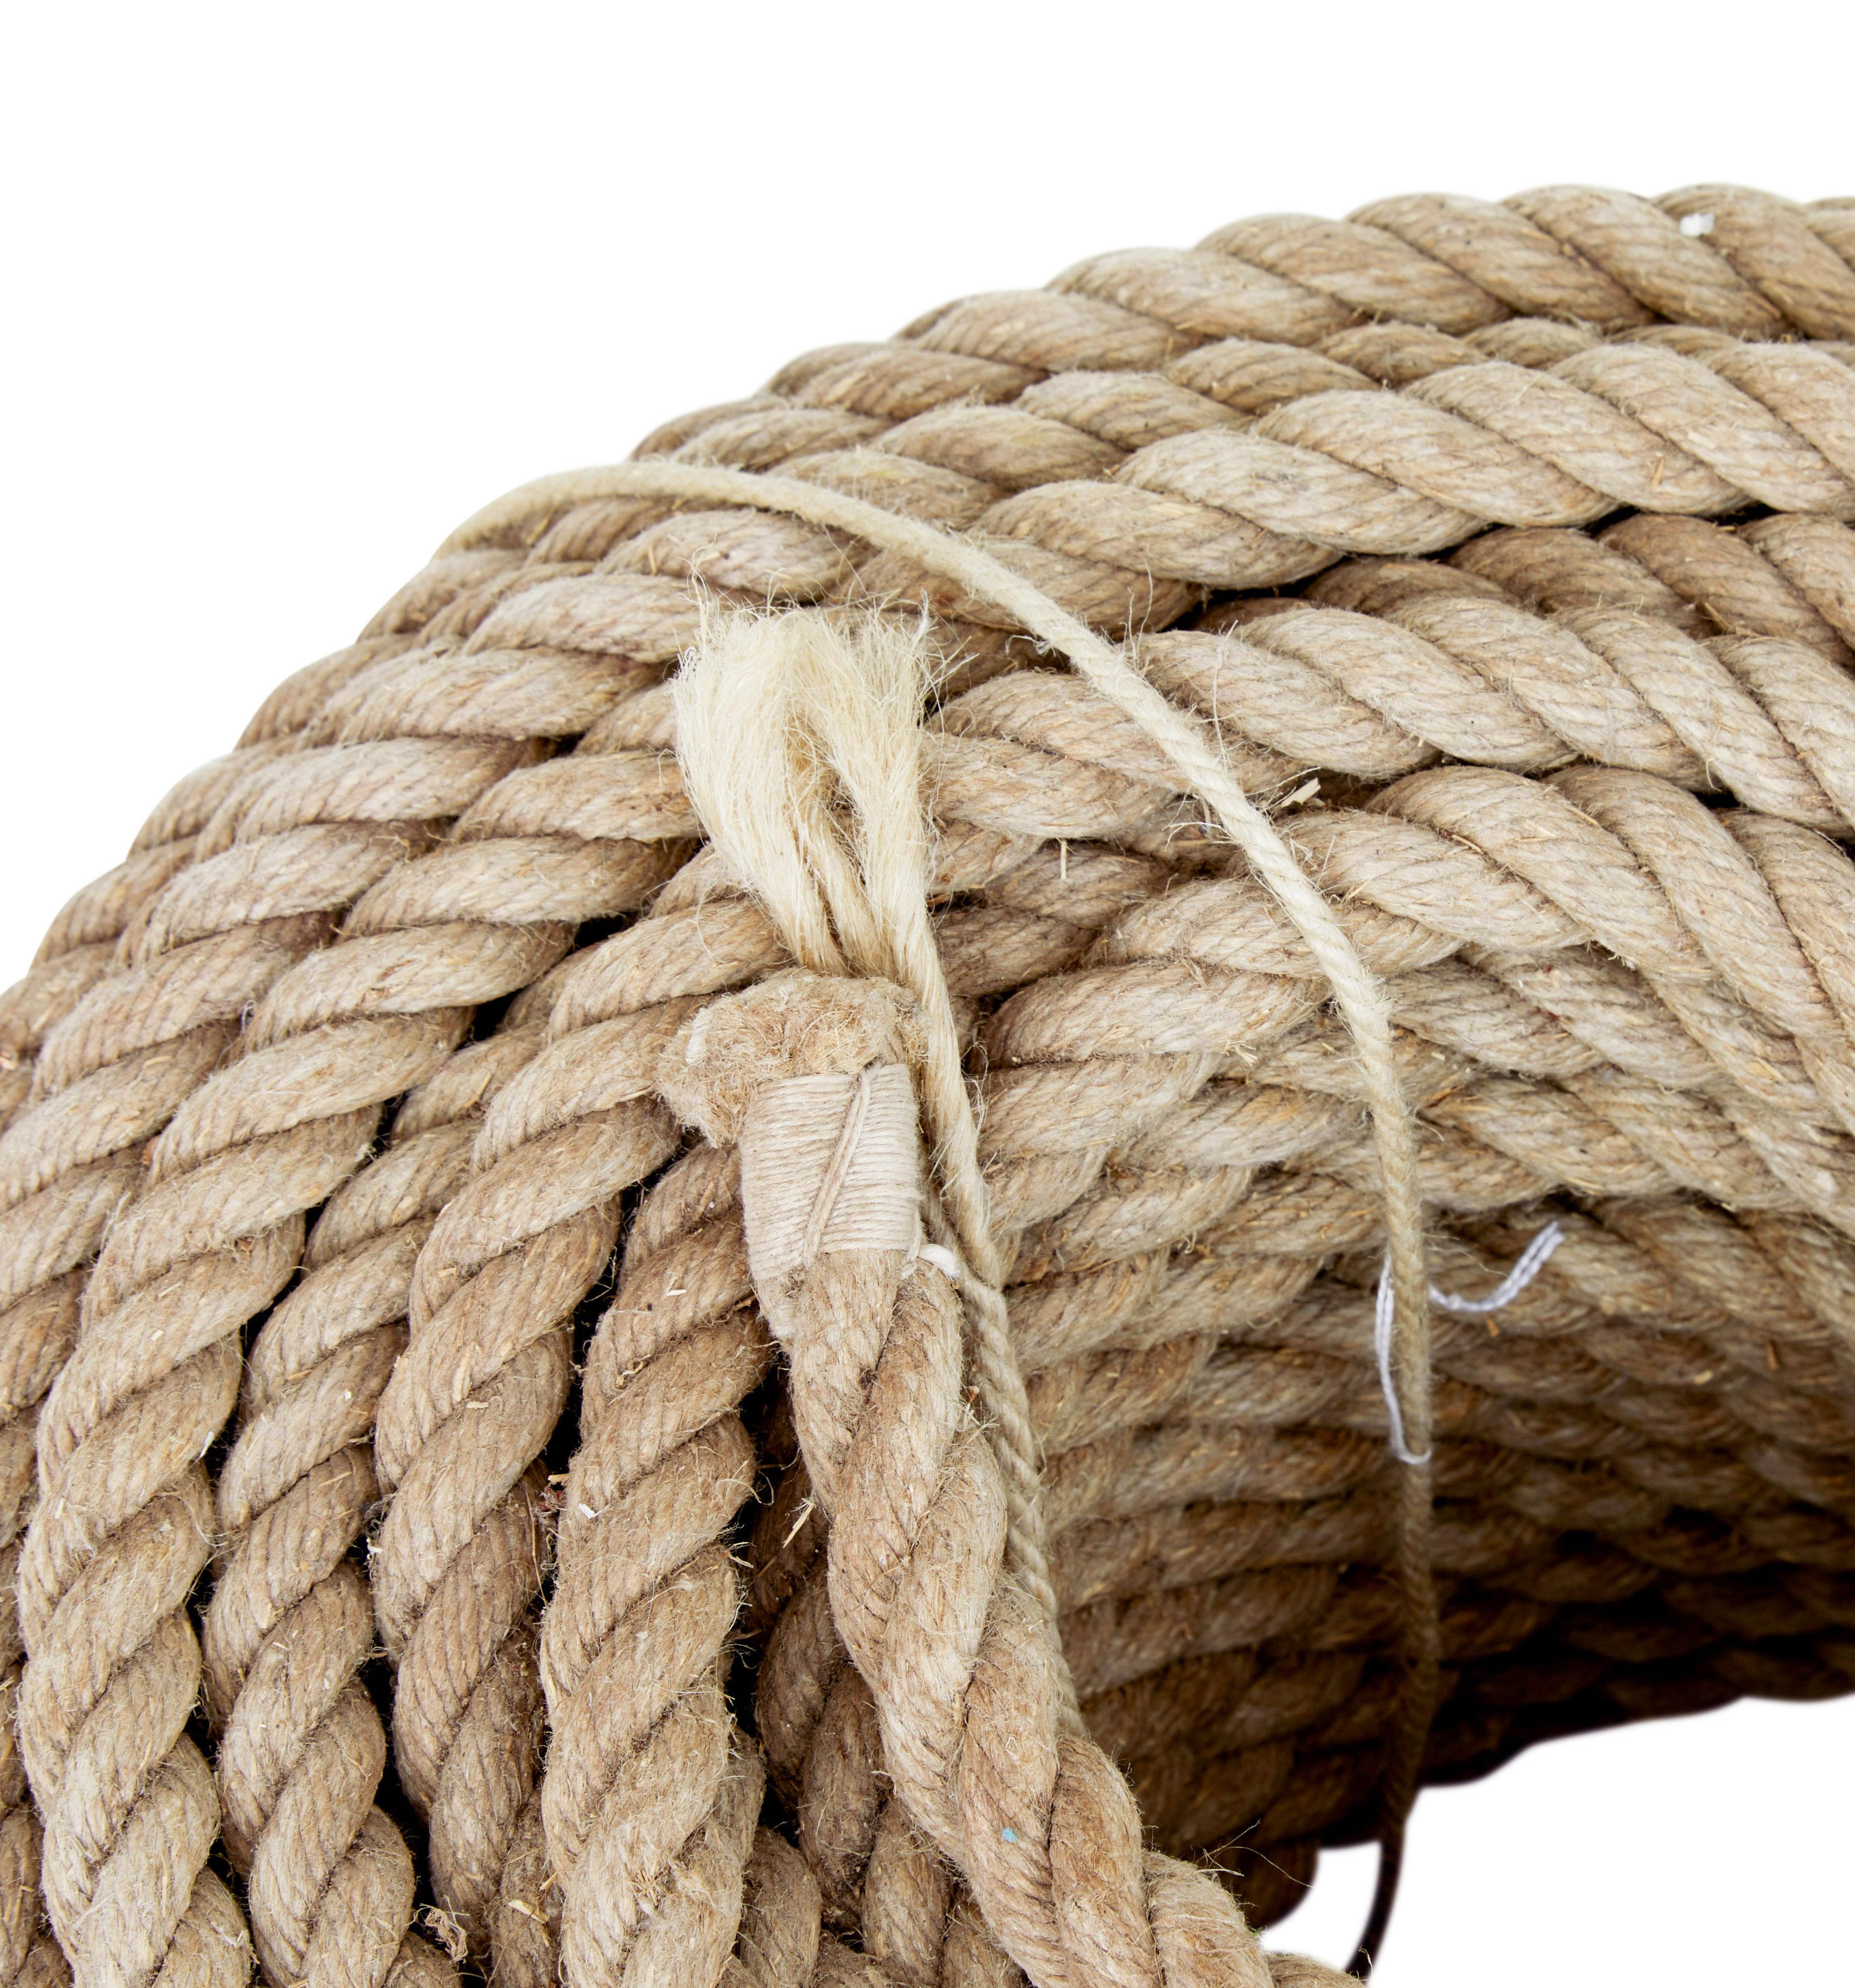 Swedish Mid 20th century unused bundle of rope For Sale